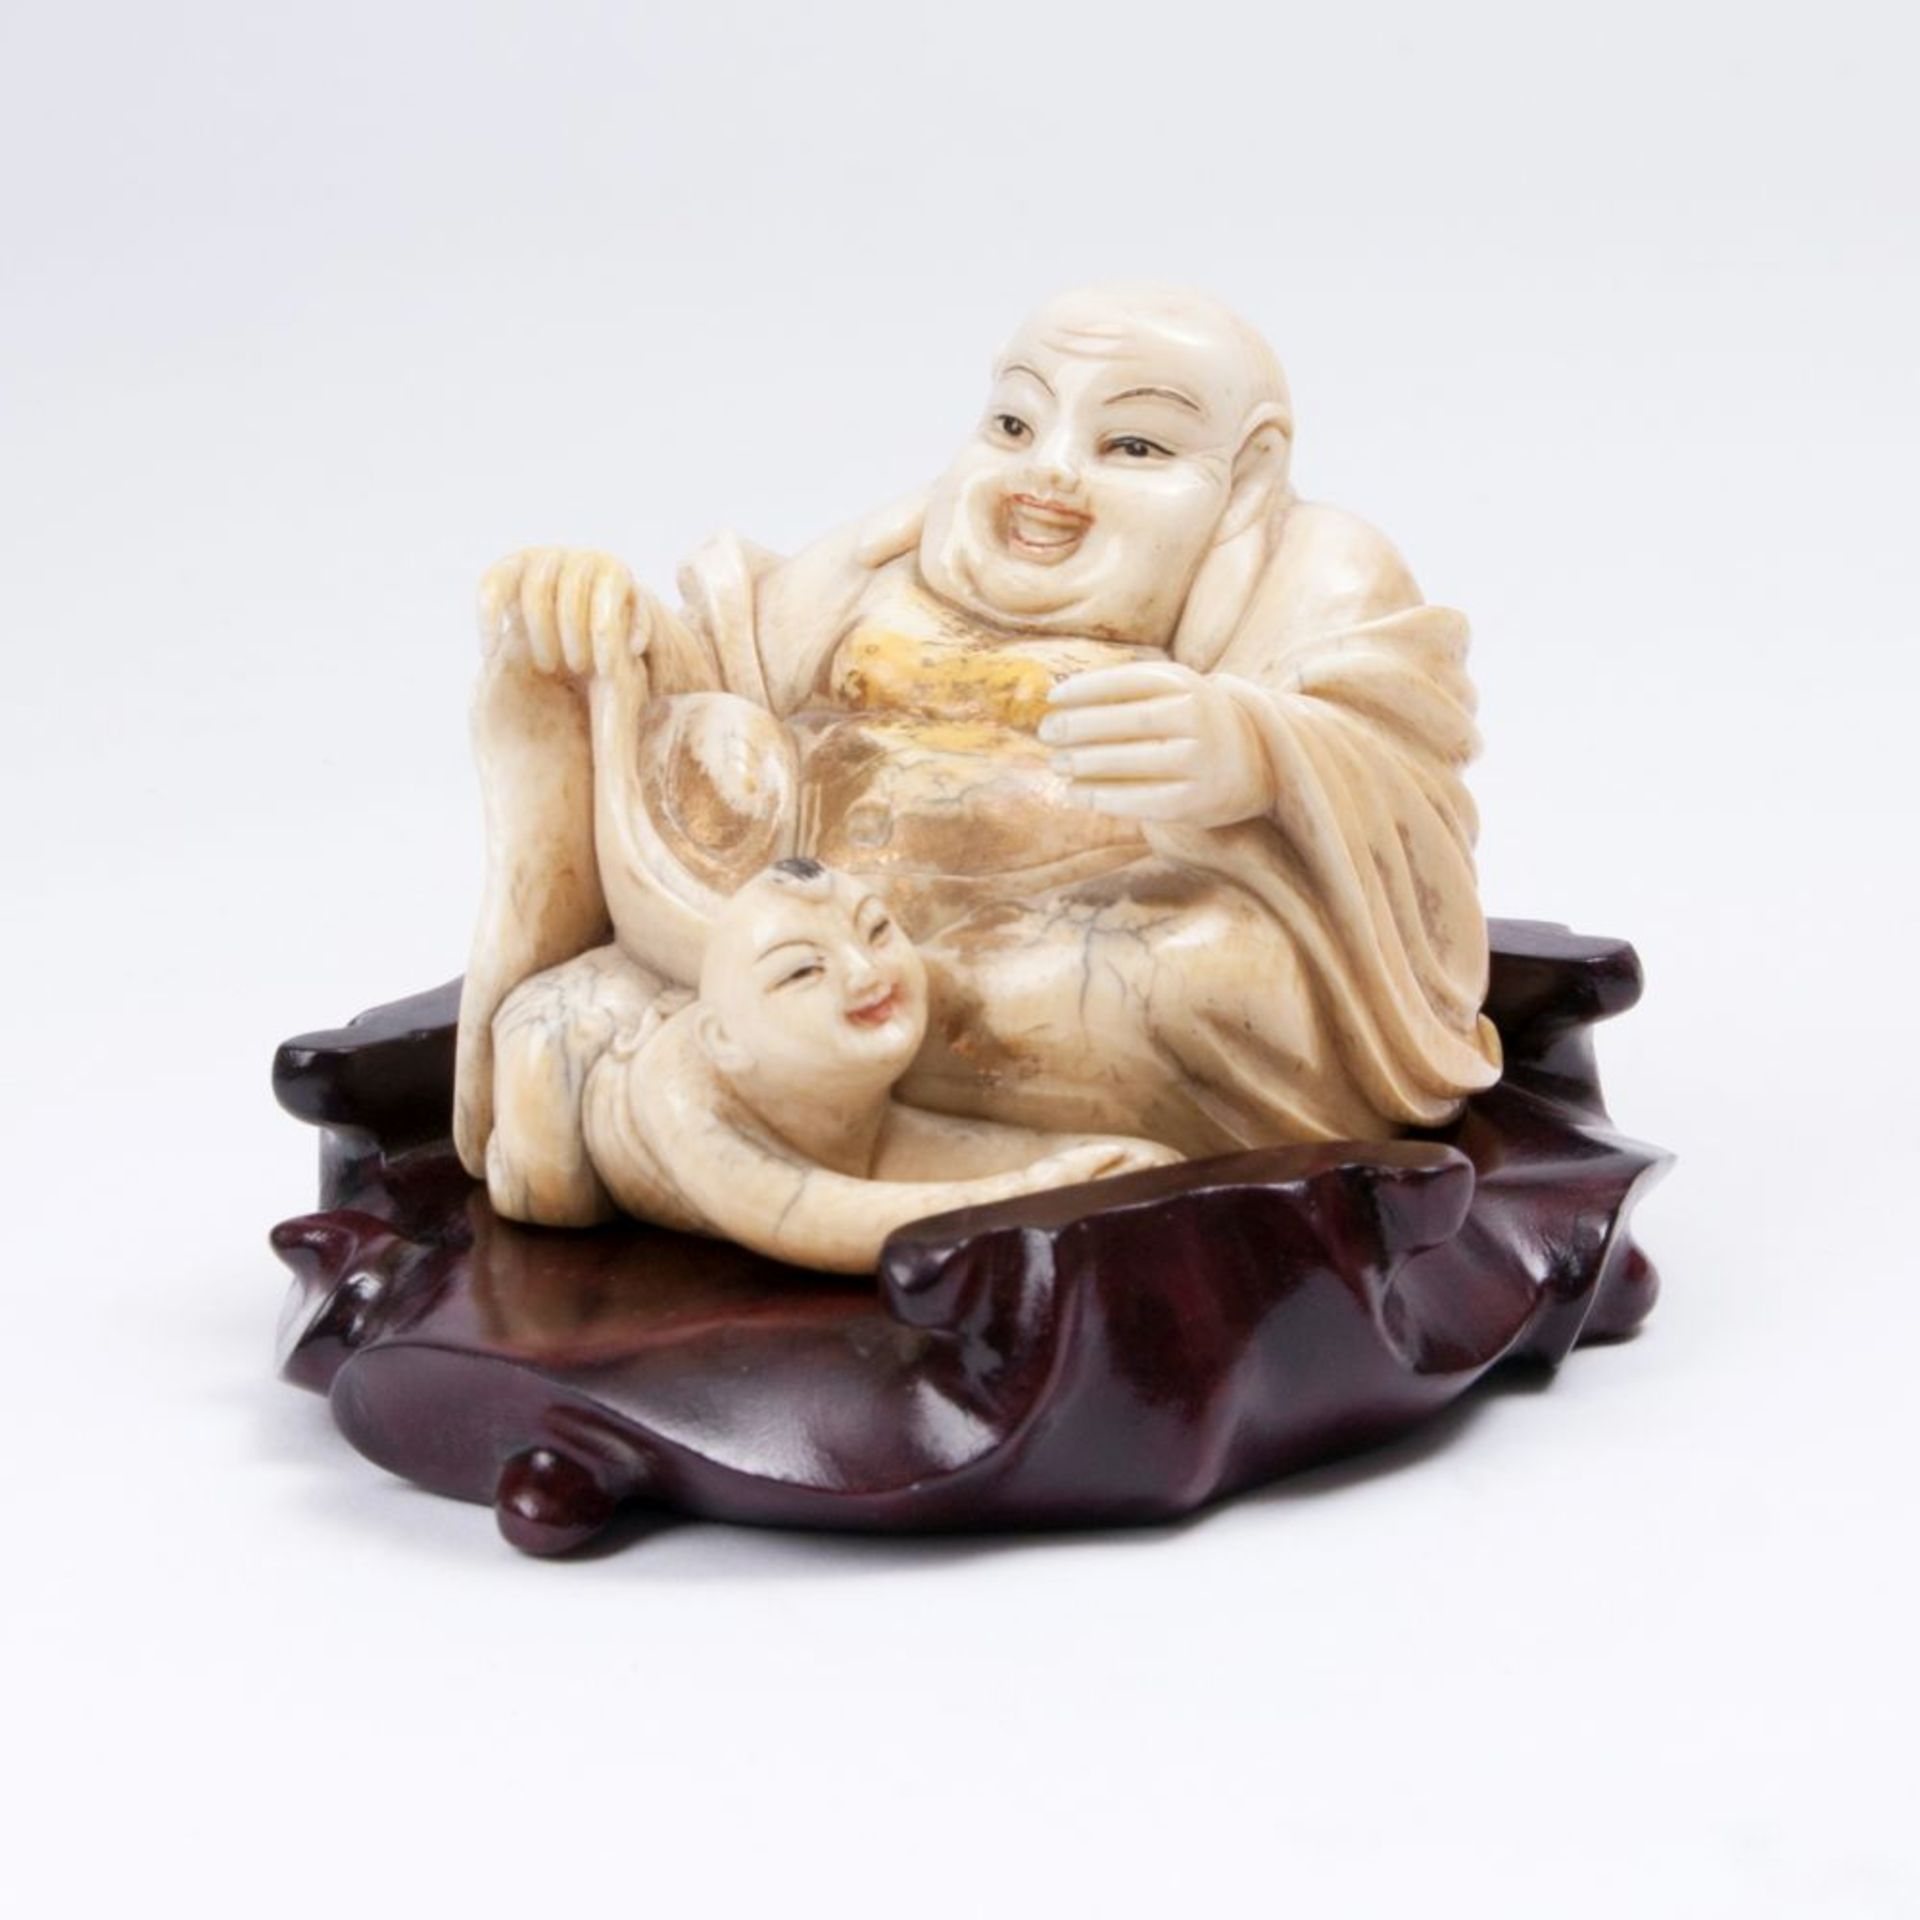 Figur eines sitzenden Budai mit Kind.